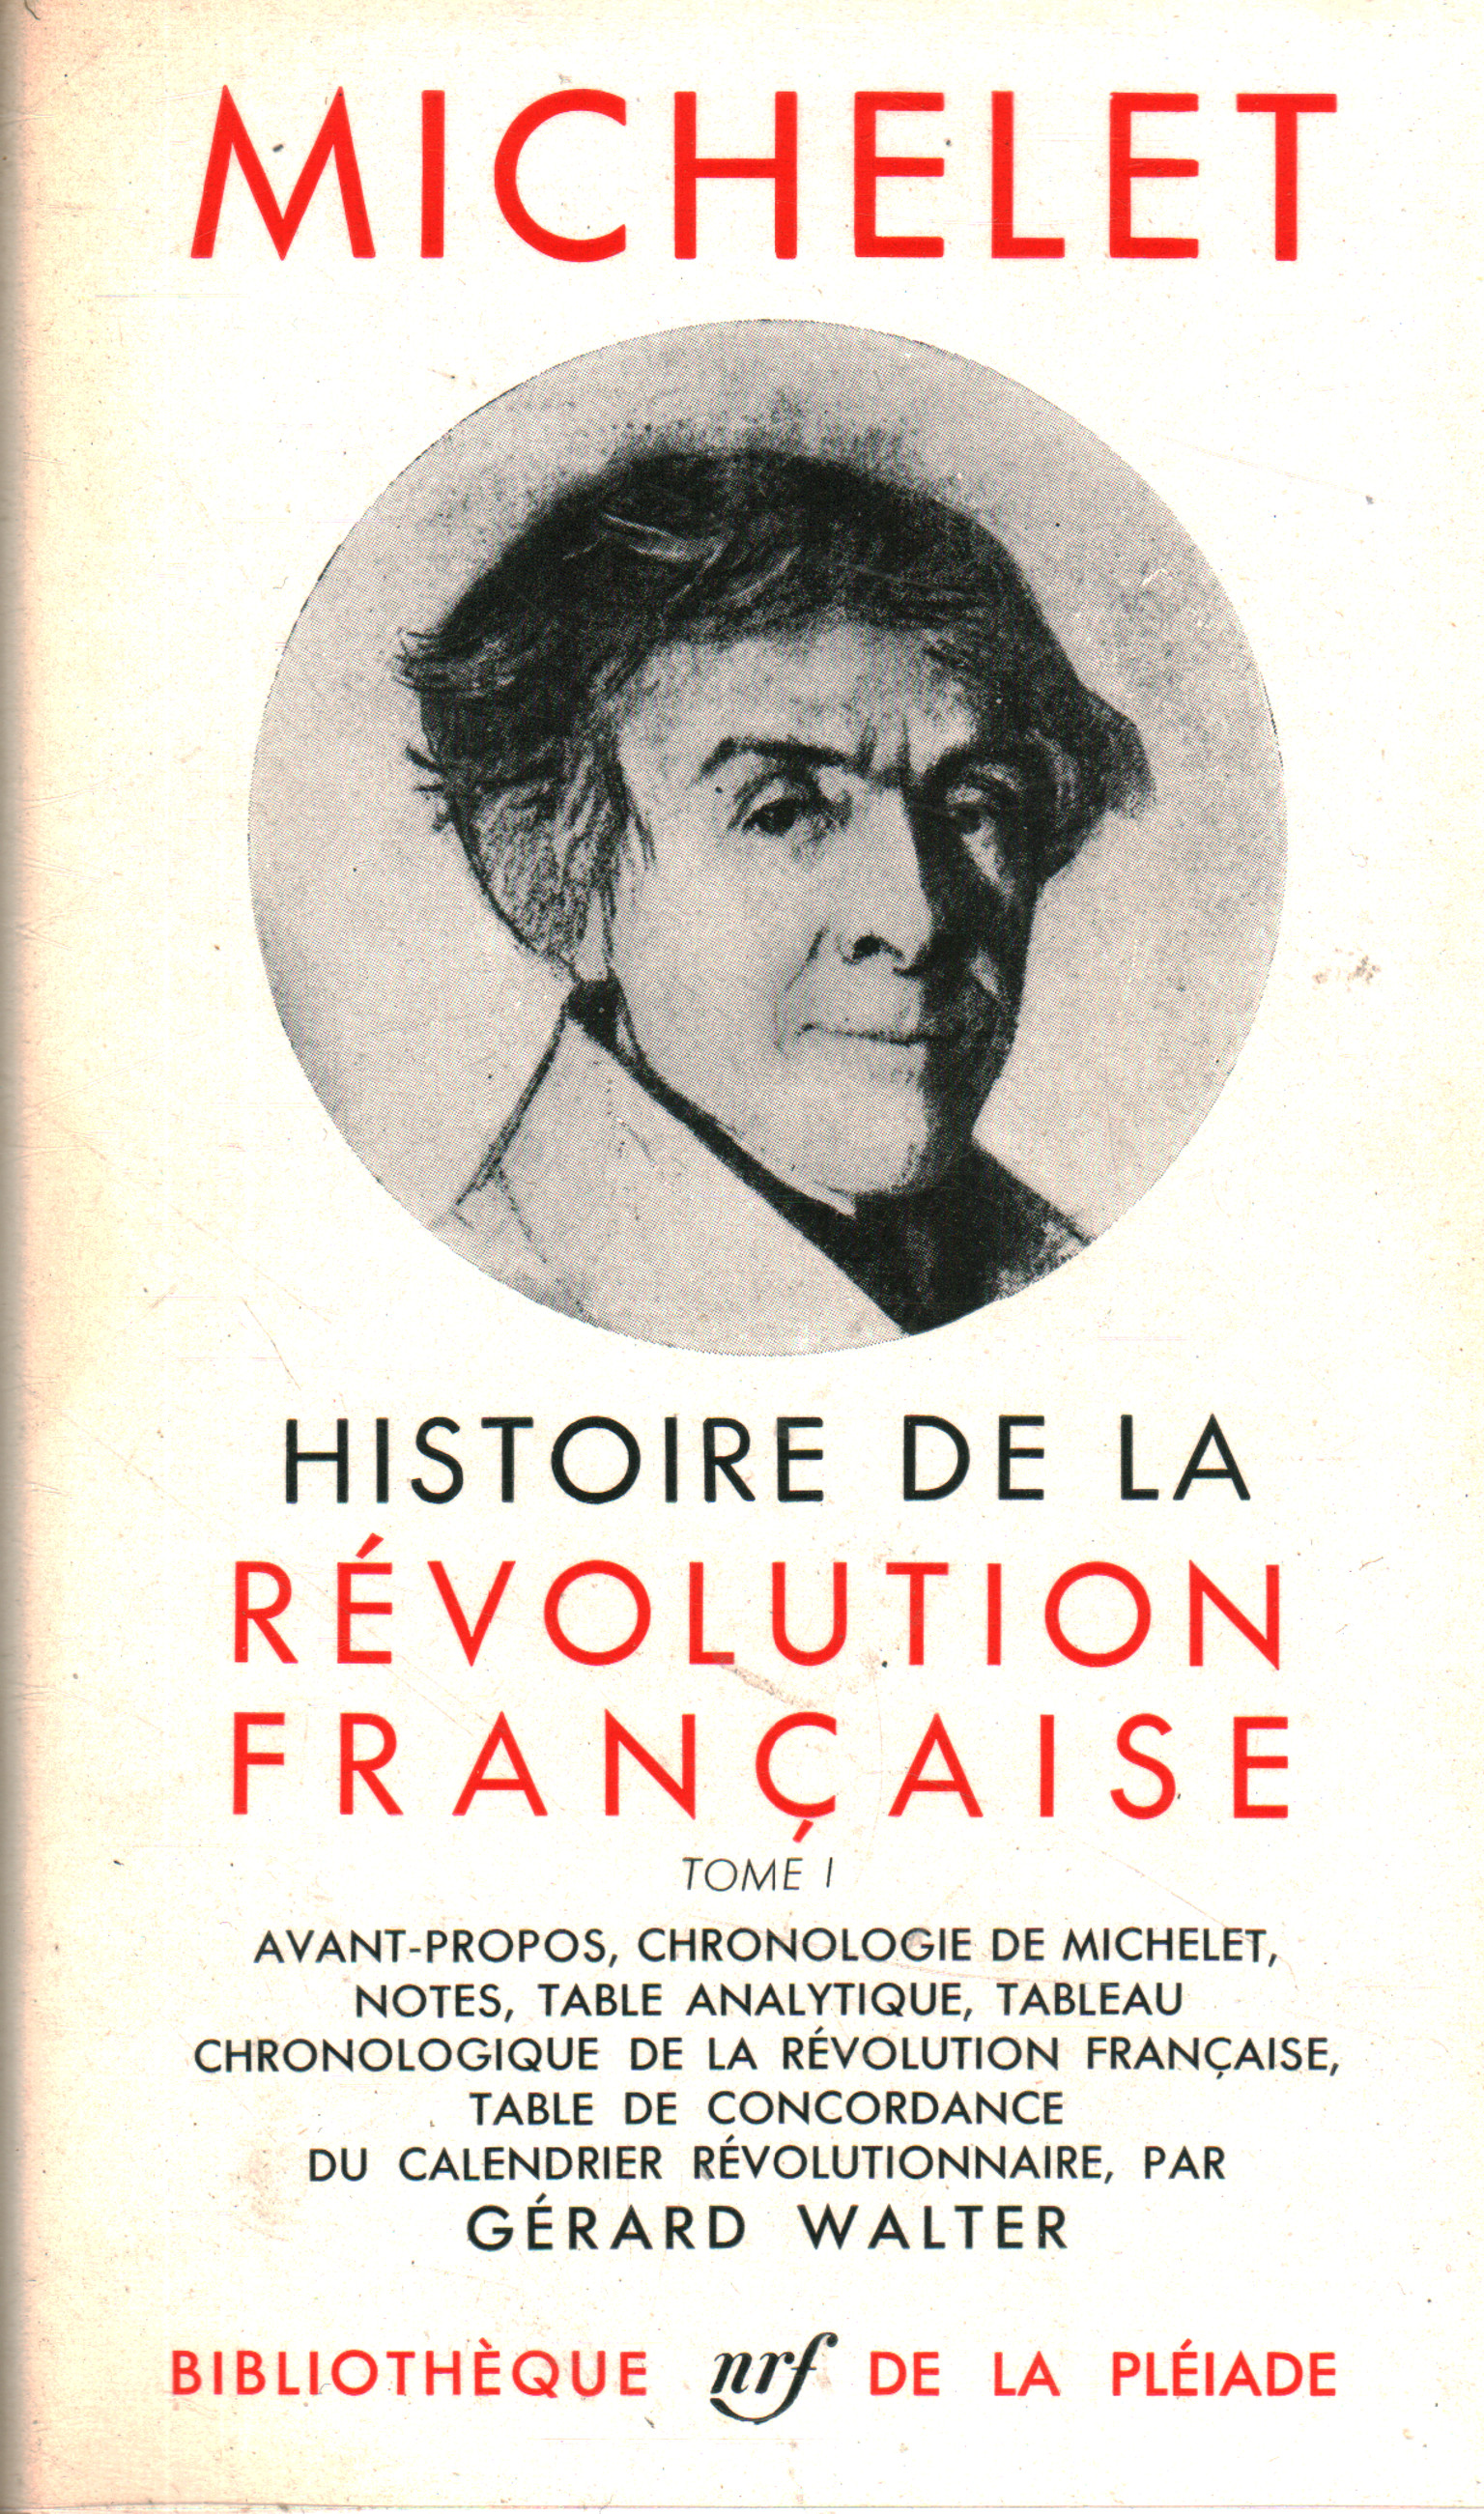 Französische Geschichte der Revolution